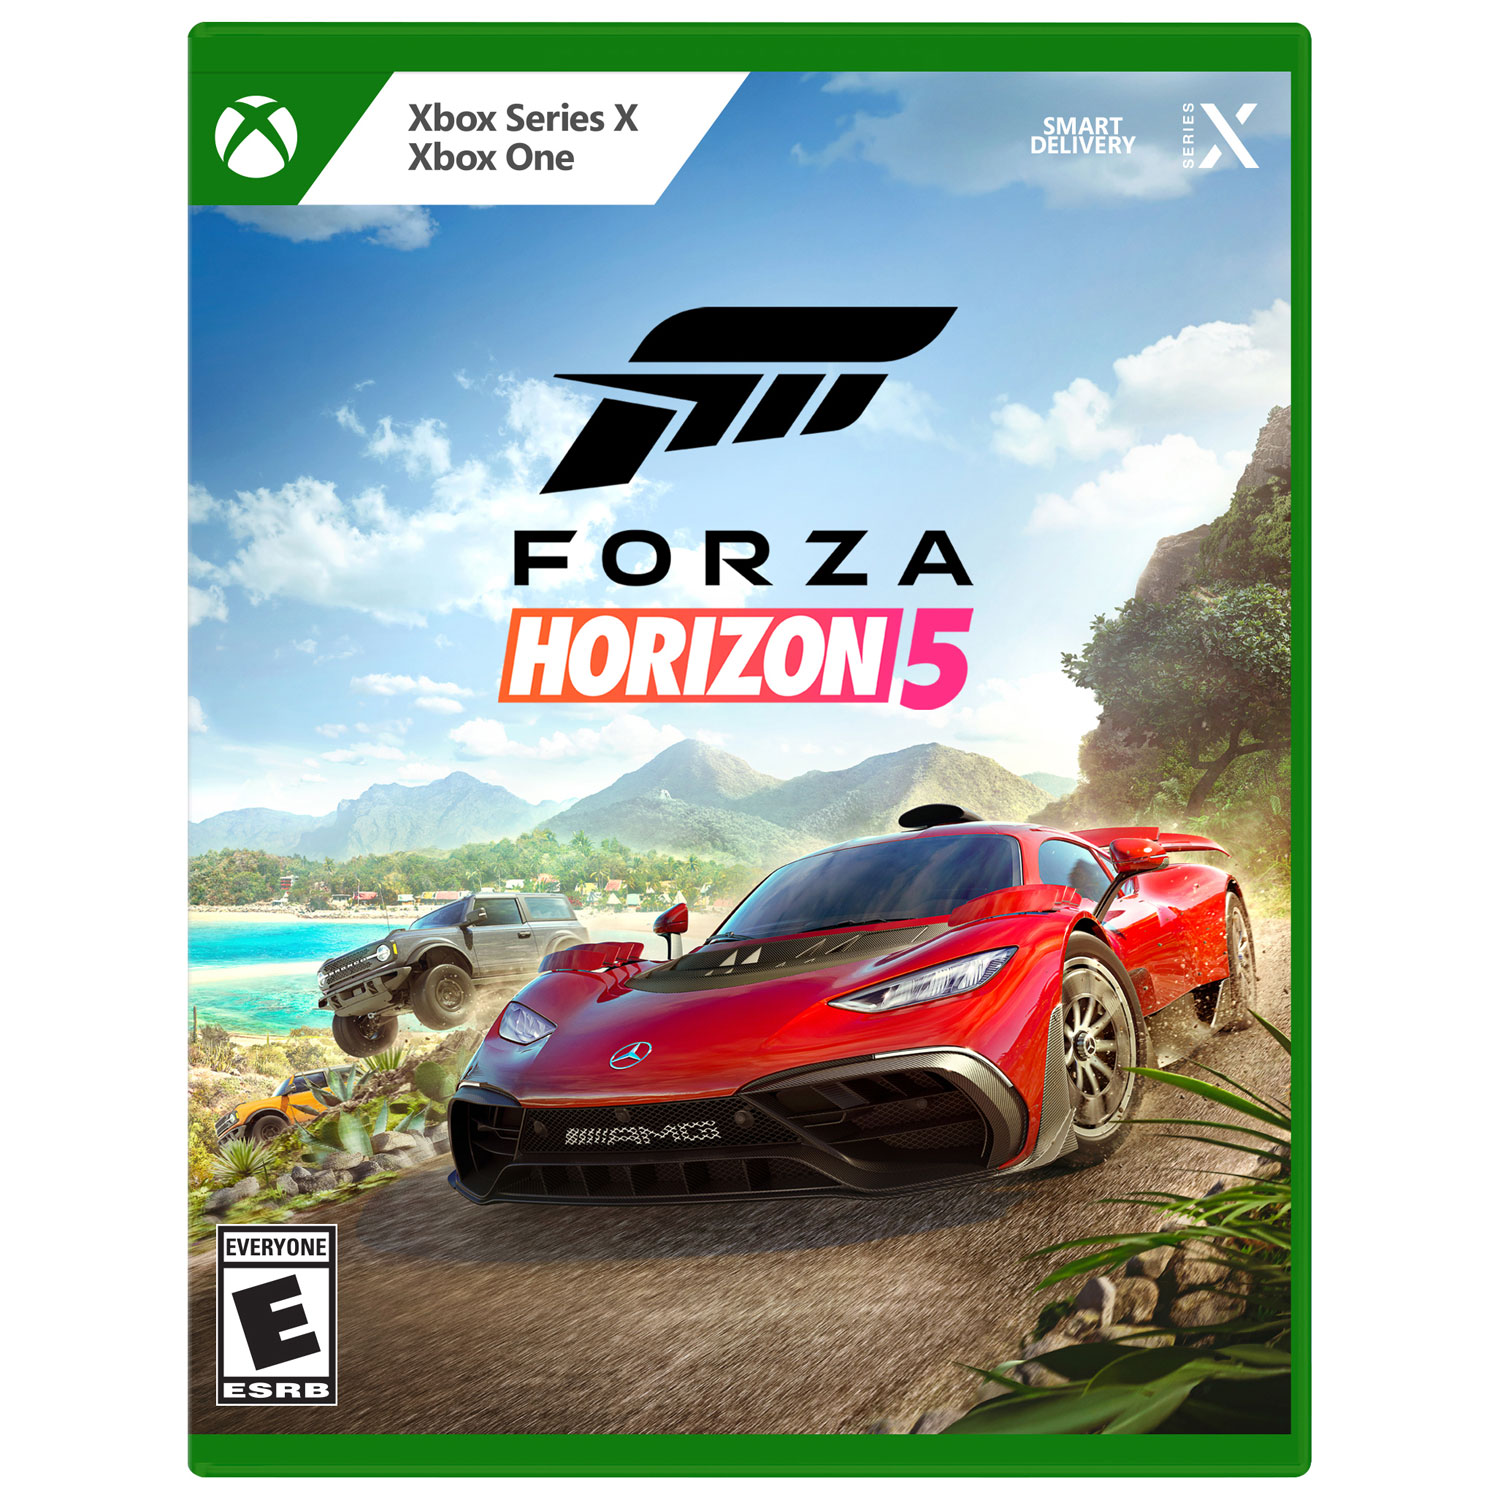 Forza Horizon 5 (Xbox Series X / Xbox One) | Best Buy Canada